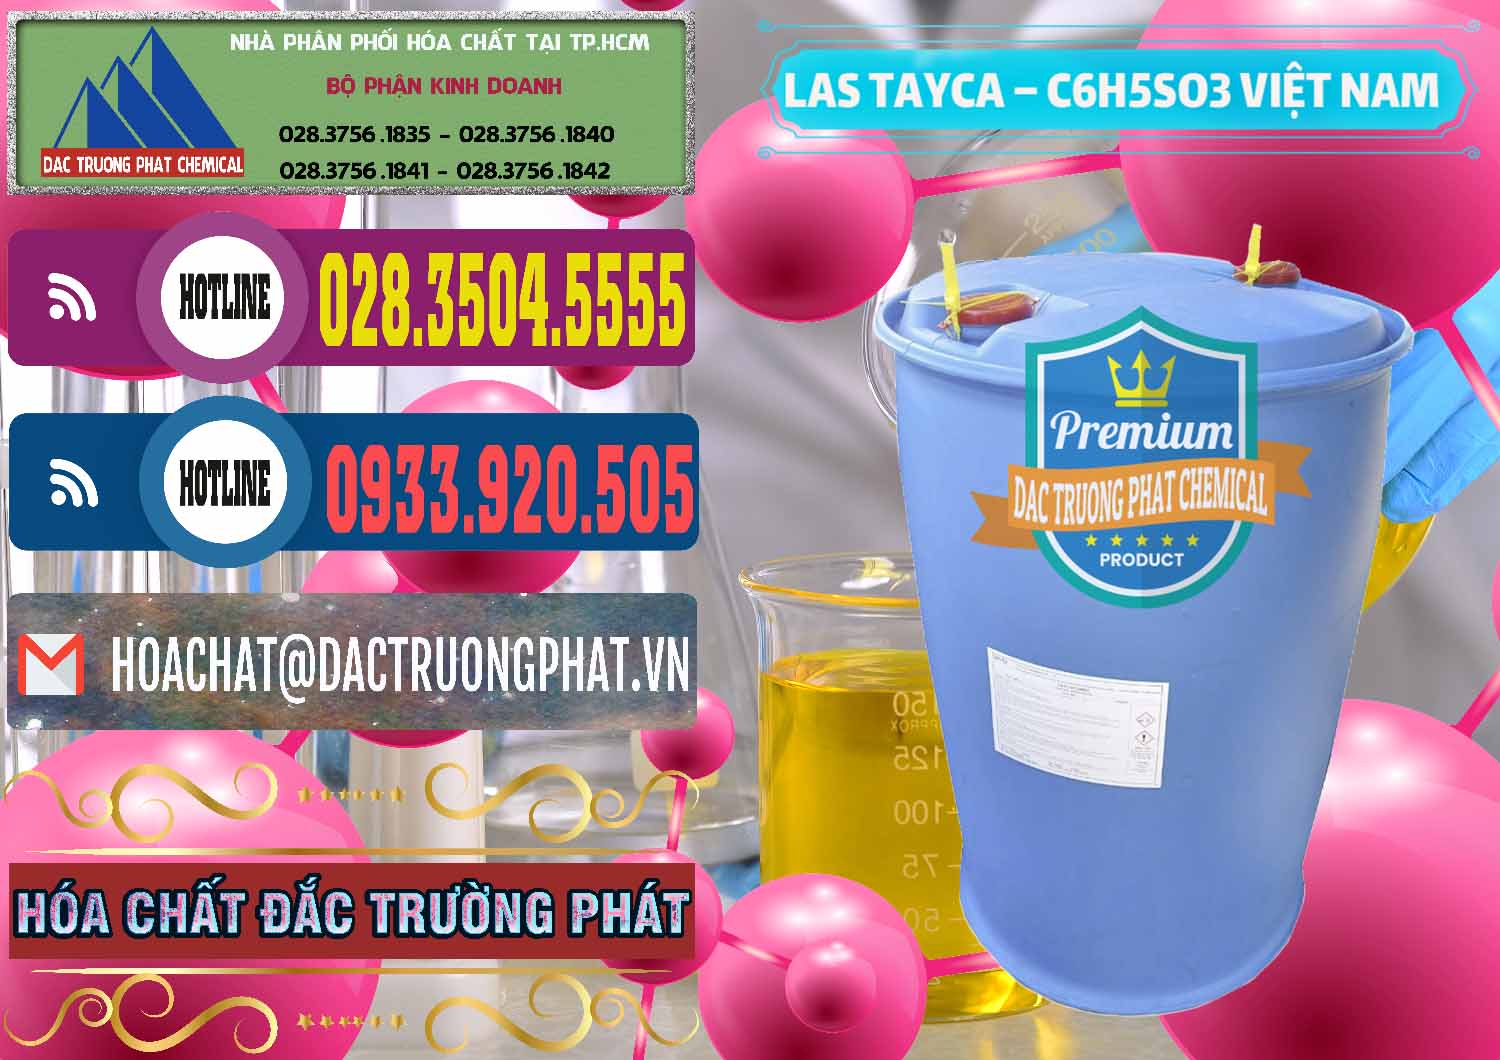 Nơi phân phối - bán Chất tạo bọt Las Tayca Việt Nam - 0305 - Chuyên cung ứng - bán hóa chất tại TP.HCM - muabanhoachat.com.vn